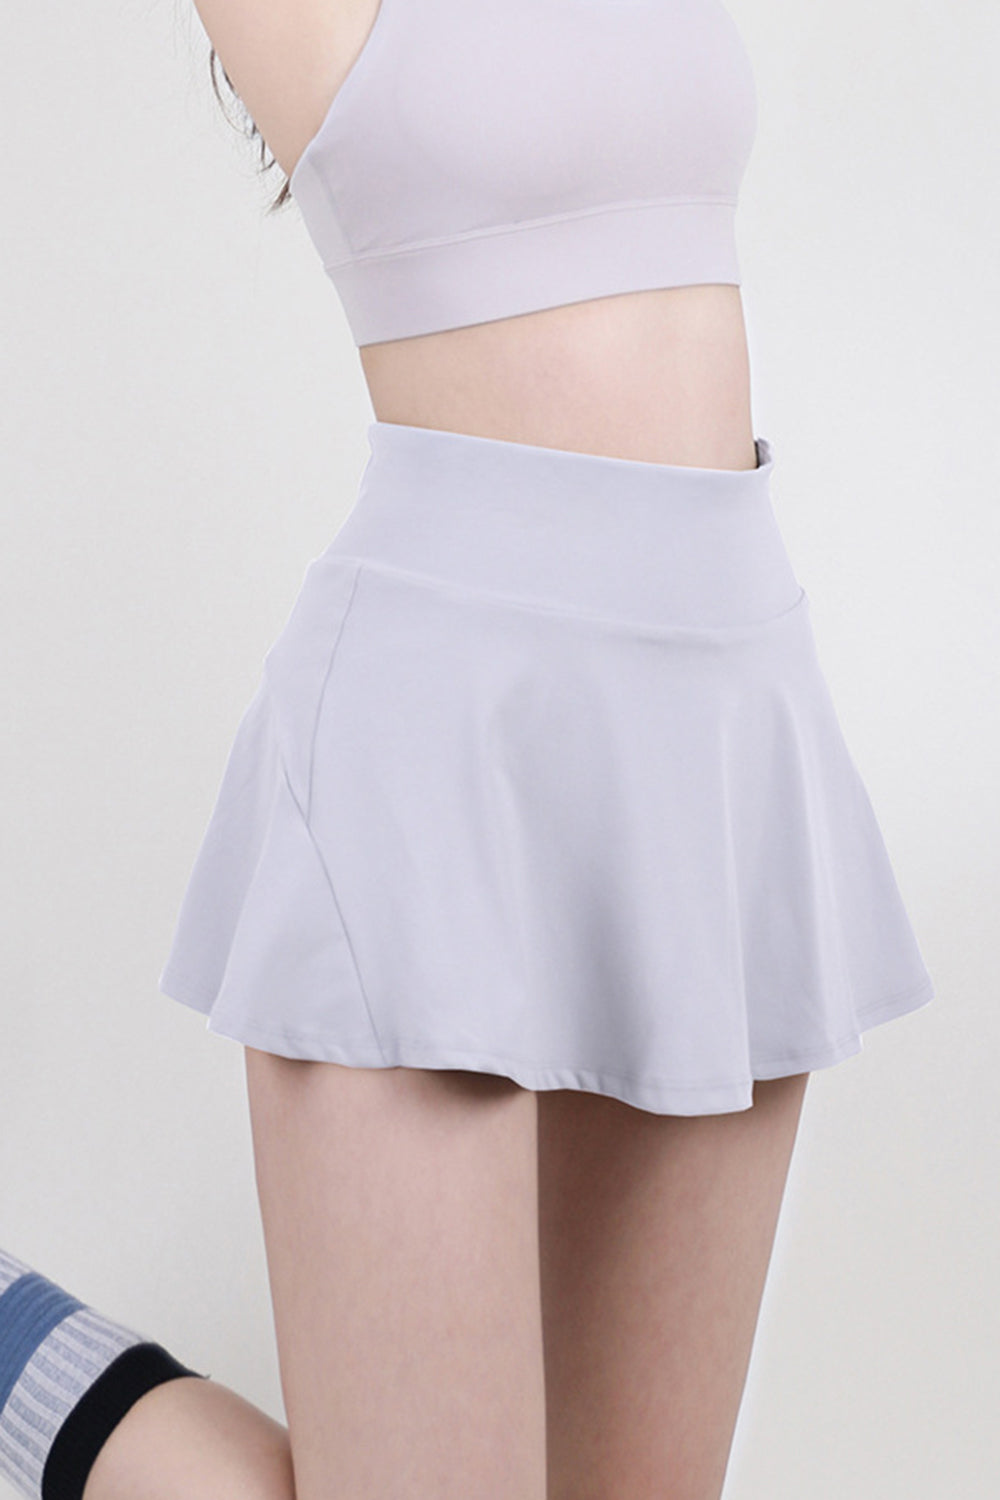 High Waist Pleated Active Skirt (5 Colors)